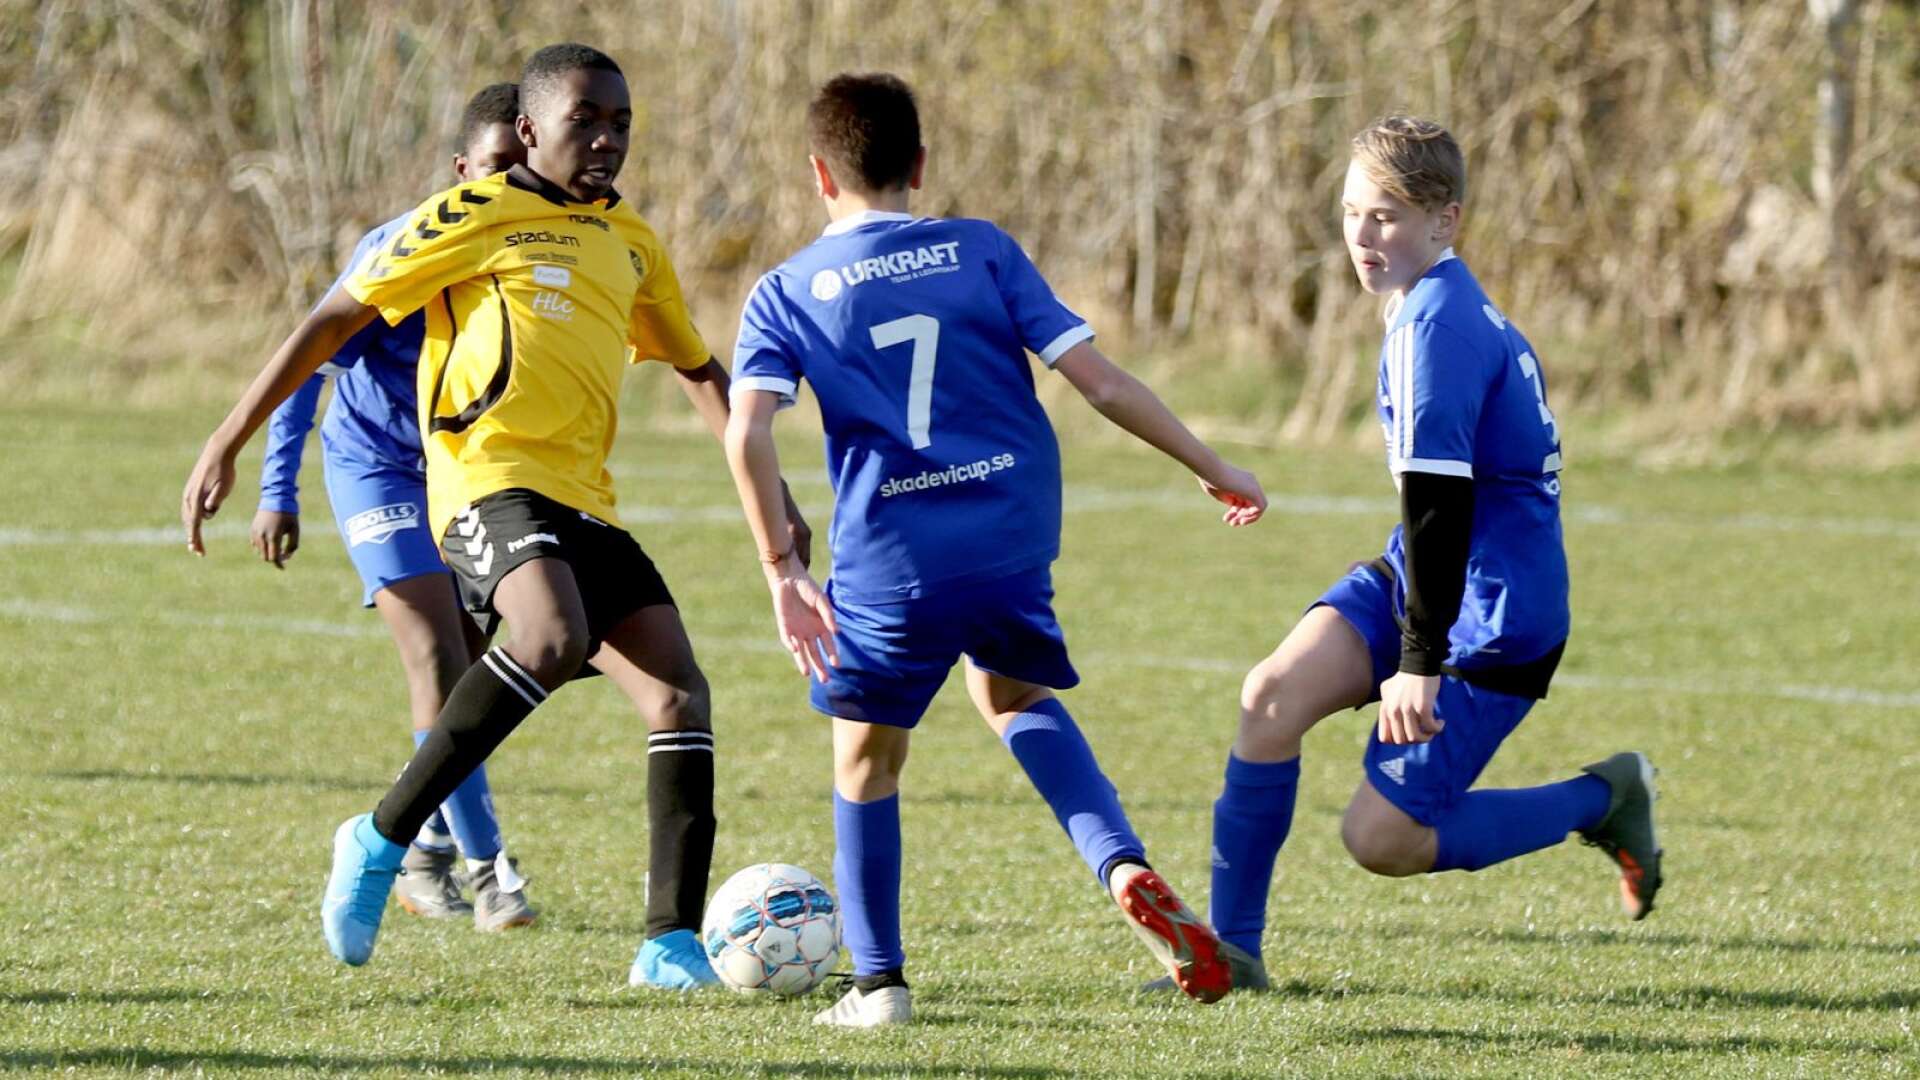 Spelare födda 2007 ifrån Skultorps IF och IFK Skövde träningsspelade mot varandra i söndags. Ungdomarna kan enligt de nya och uppdaterade riktlinjerna fortsätta att träningsspela mot lag inom distriktets gränser.